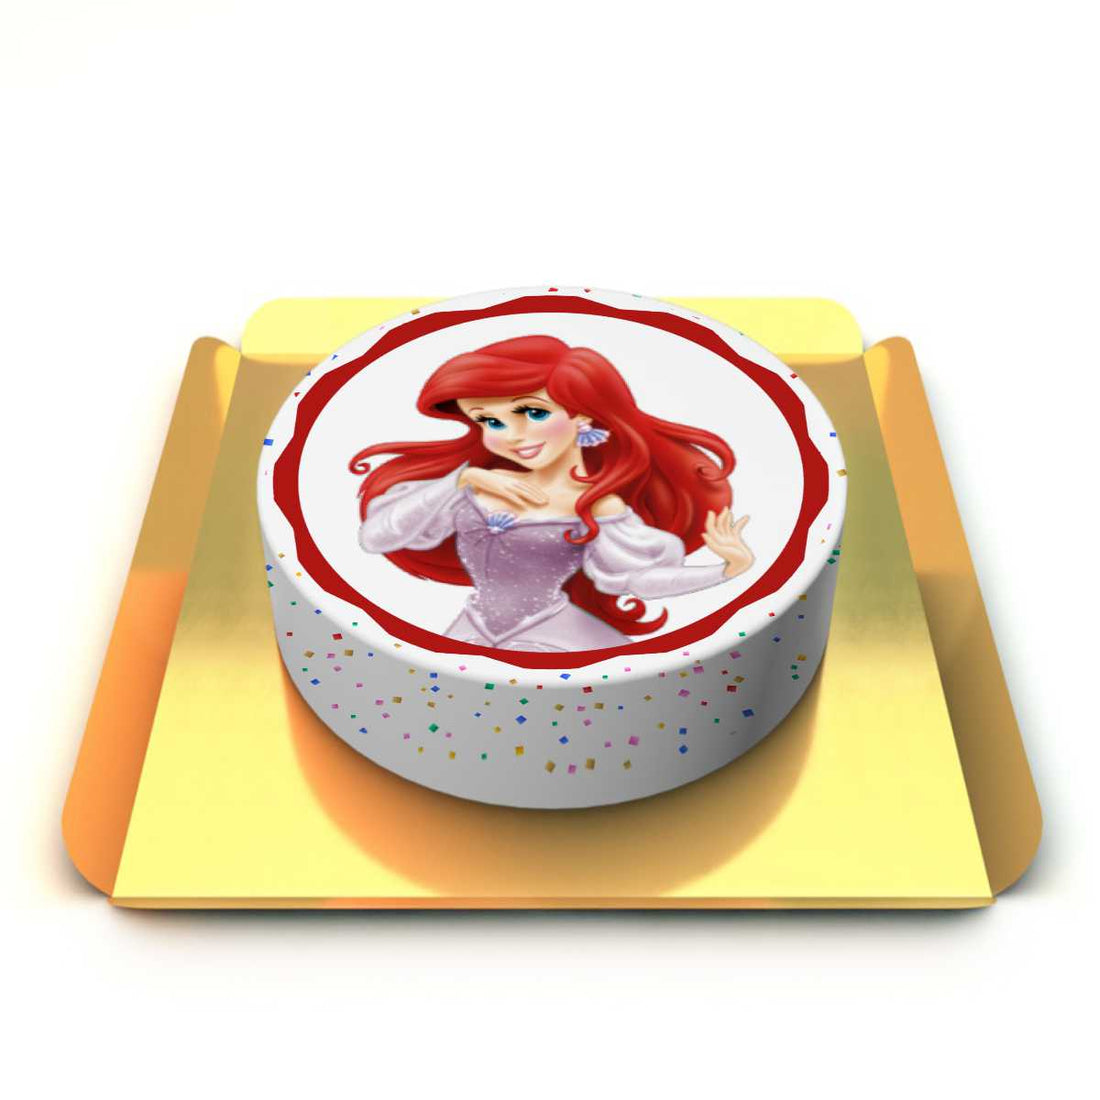 Prenses Ariel Pastası